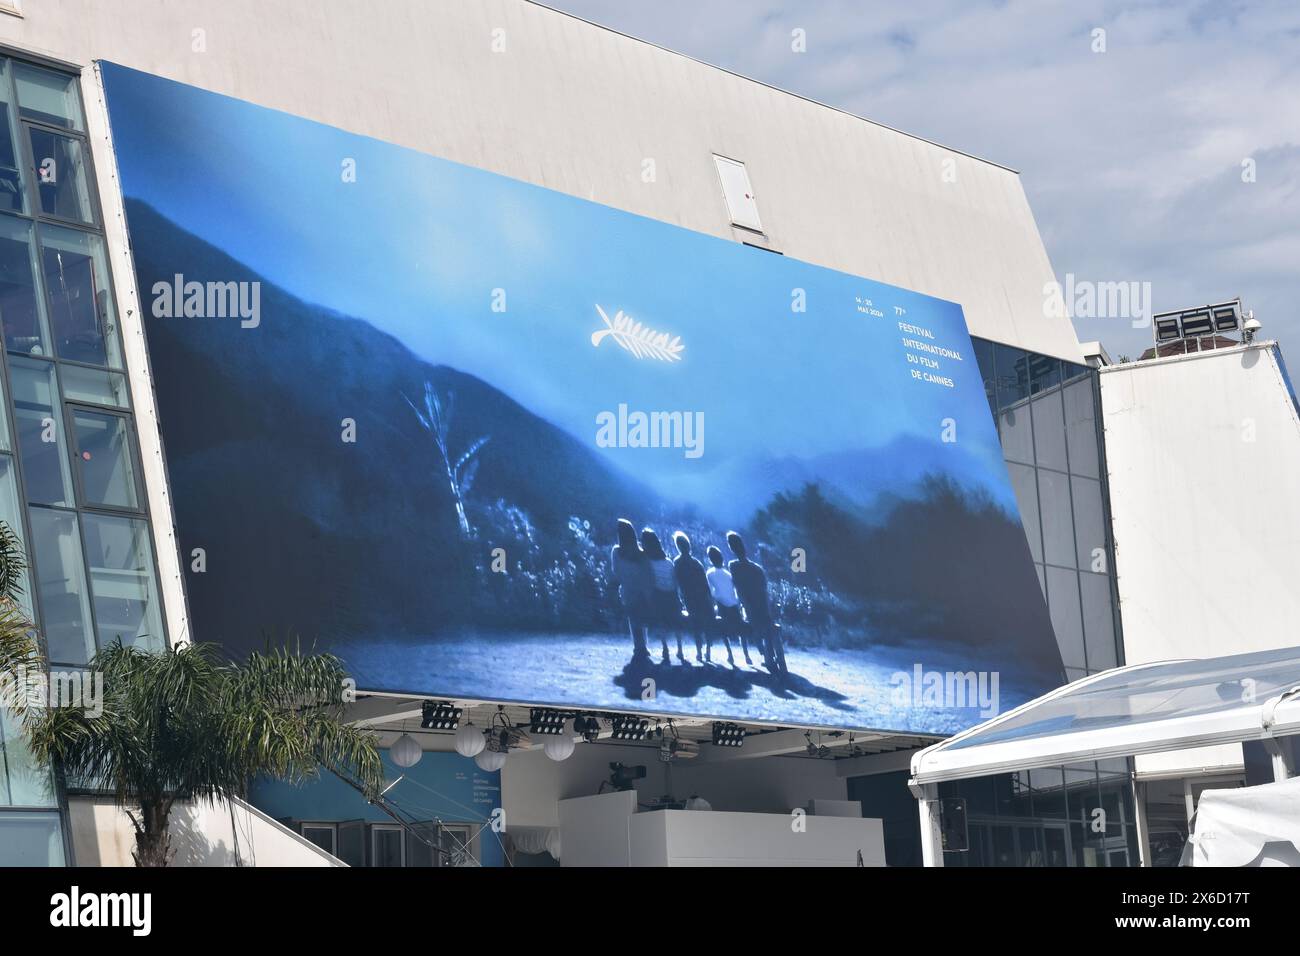 Frankreich, Cannes, das offizielle Plakat für die 77. Internationalen Filmfestspiele mit einem Bild des Films Rhapsodie en Août von Akira Kurosawa. Stockfoto